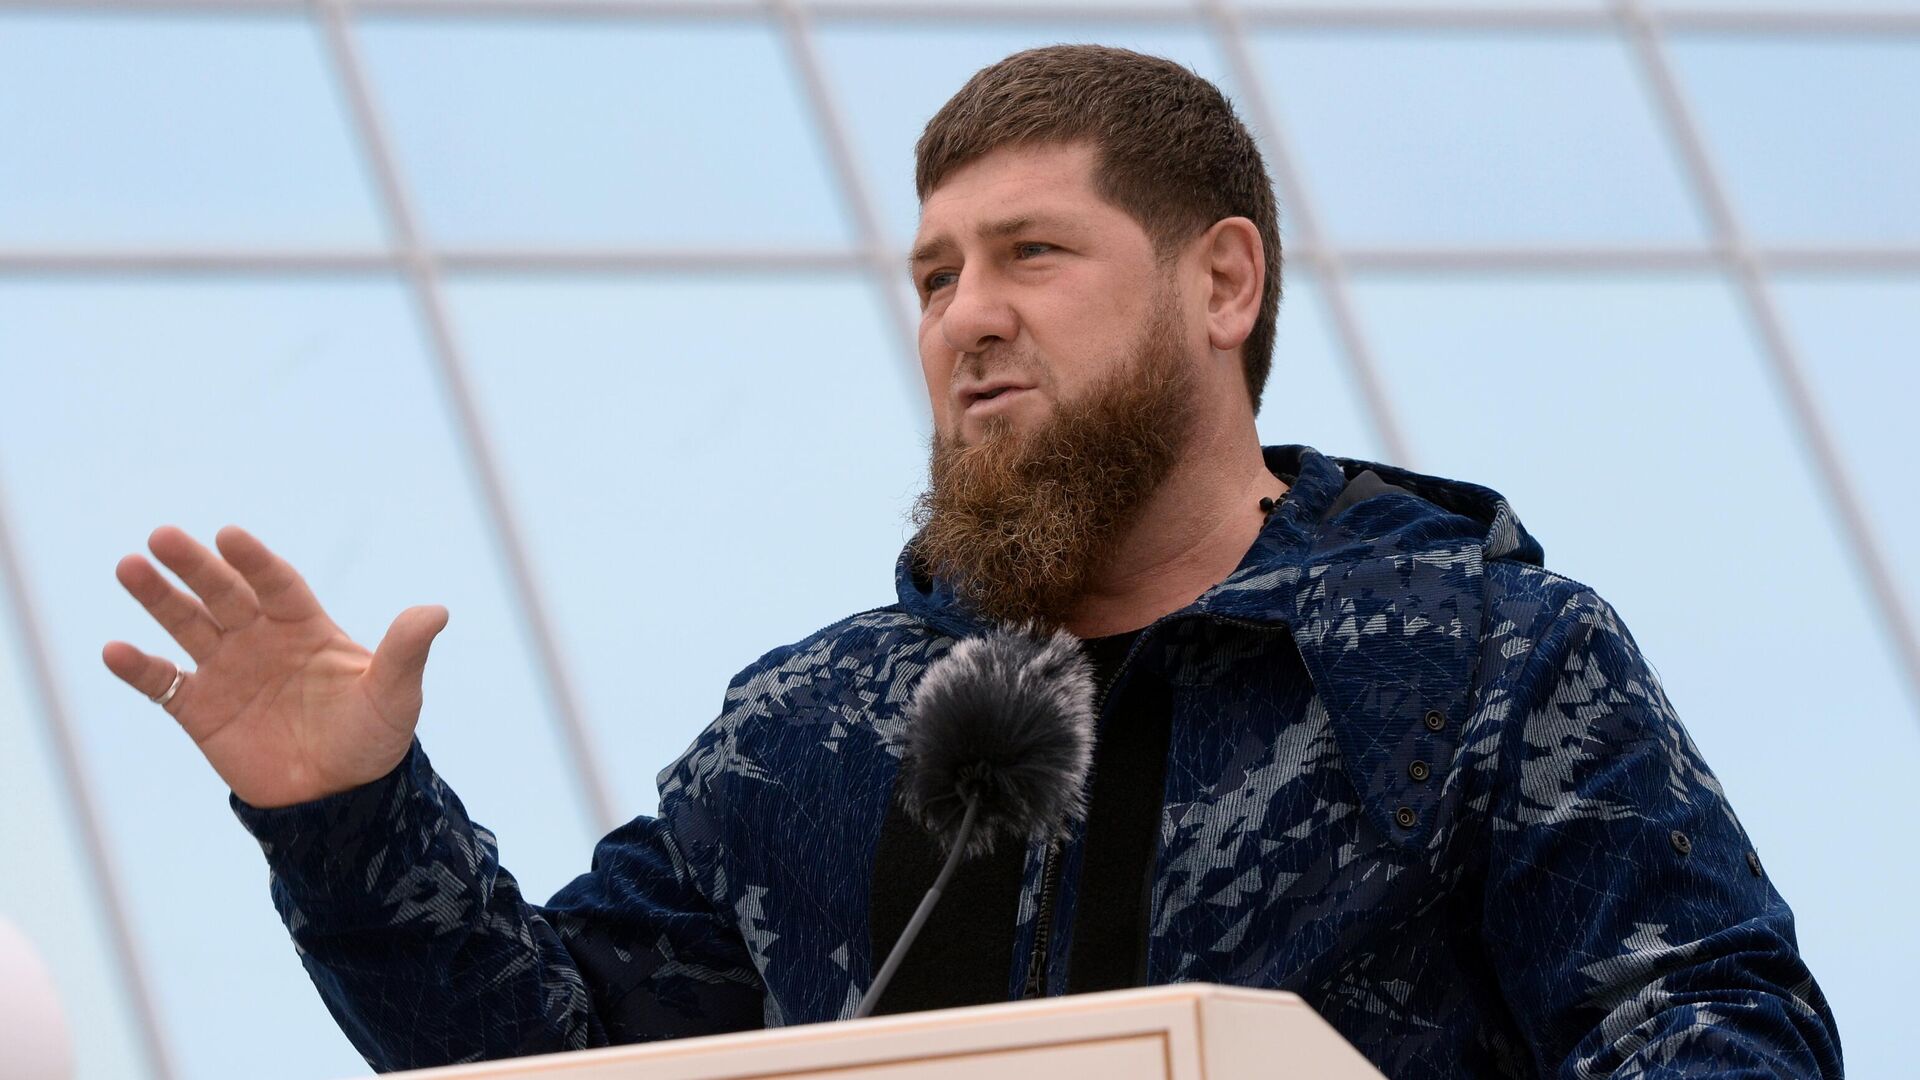 Кадыров со смехом озвучил Путину результаты на выборах в Чечне 